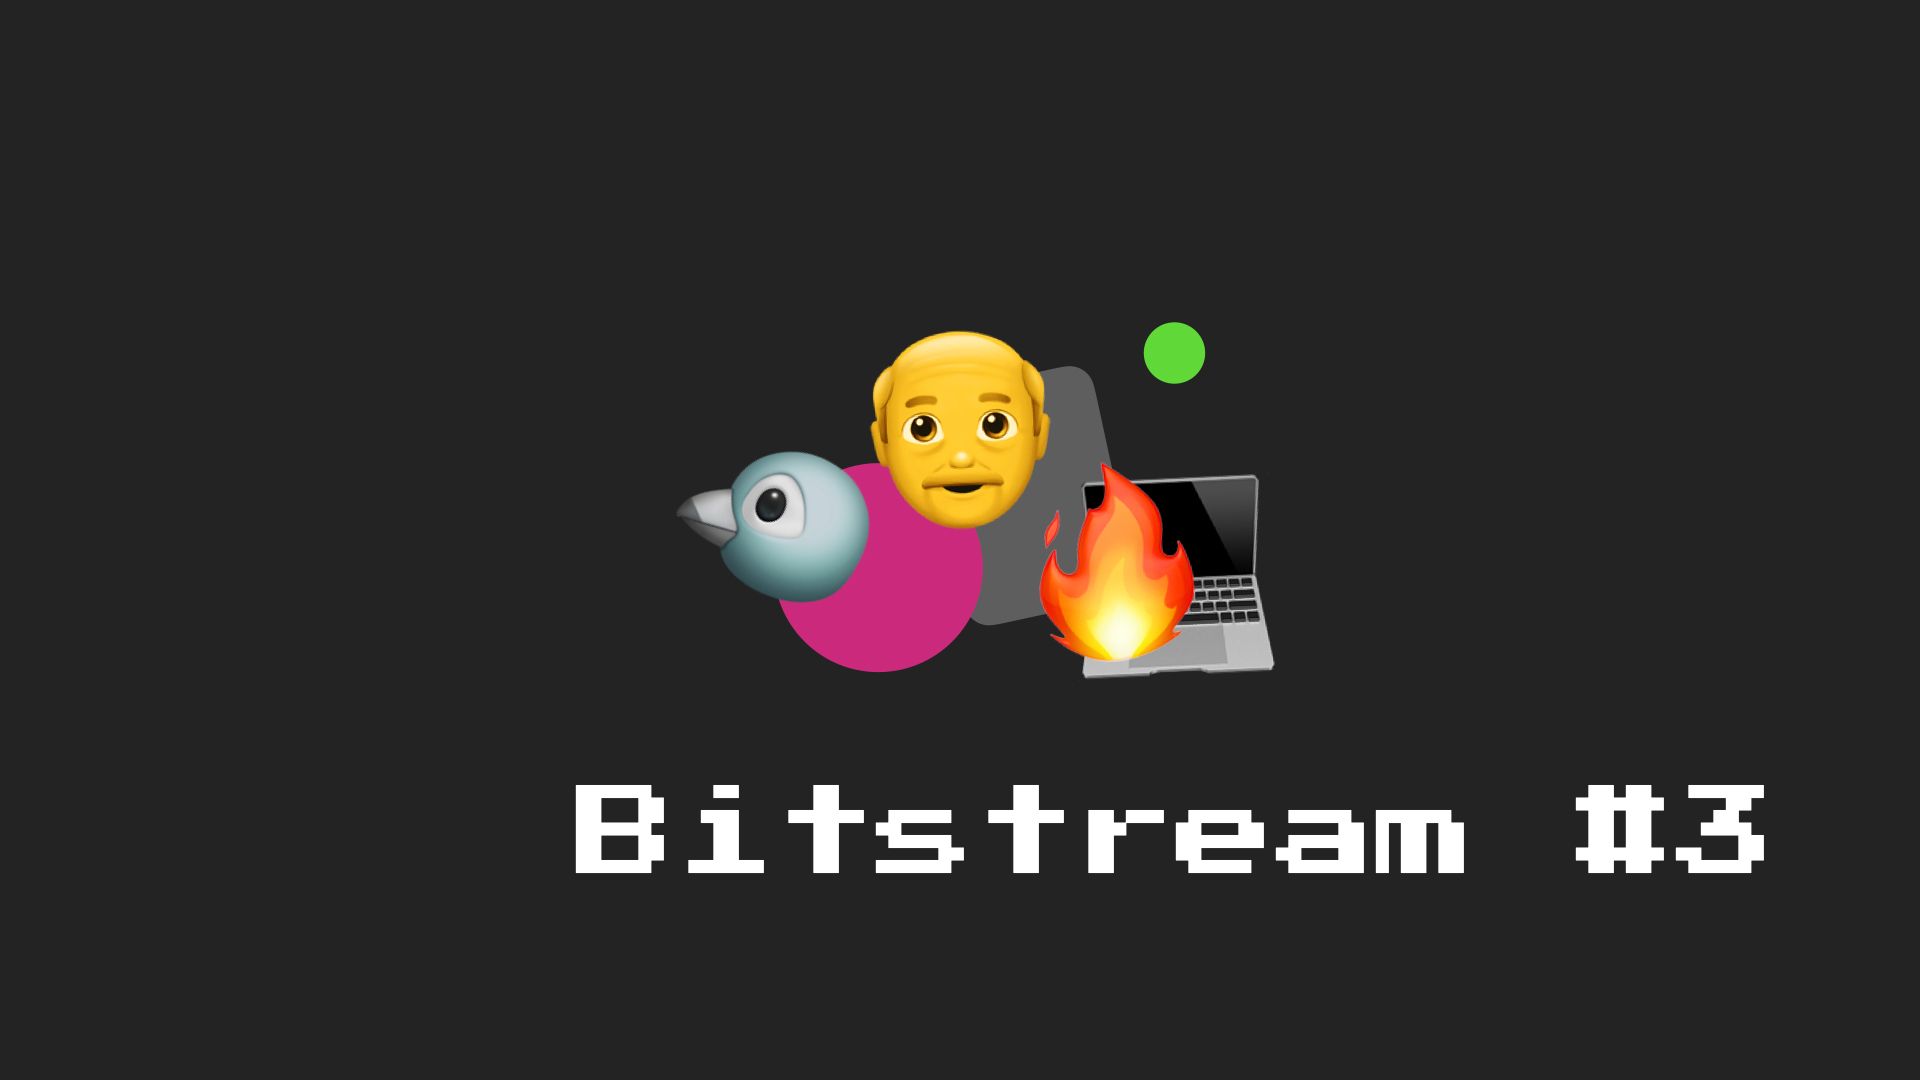 Bitstream #3